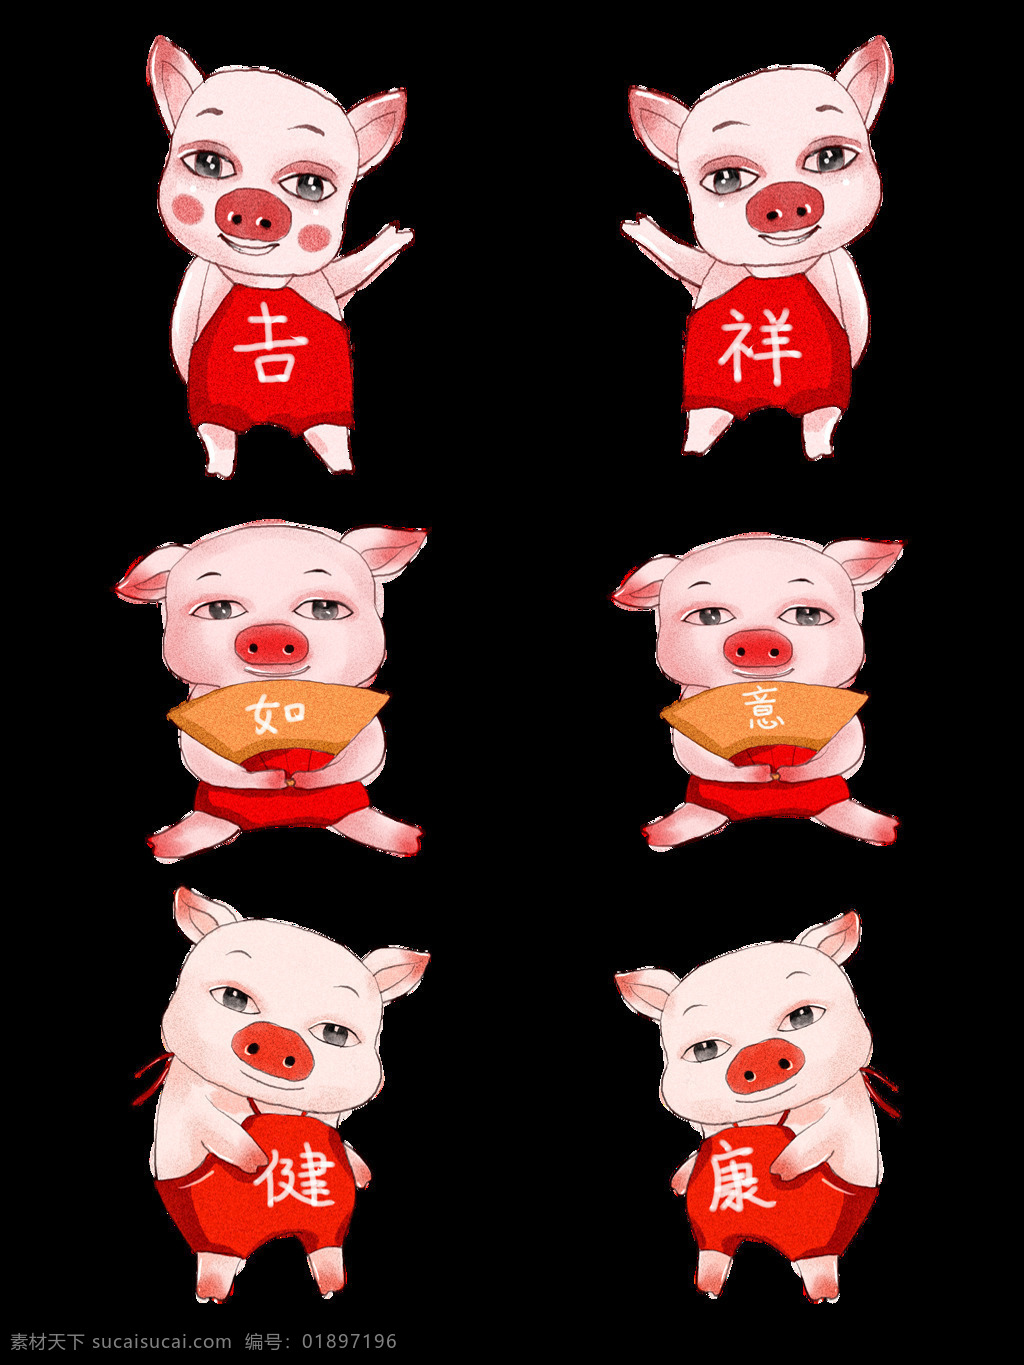 2019 生肖 猪 猪年 套 图 原创 商用 元素 可爱 吉祥 如意 健康 生肖猪 手绘 板绘 水彩